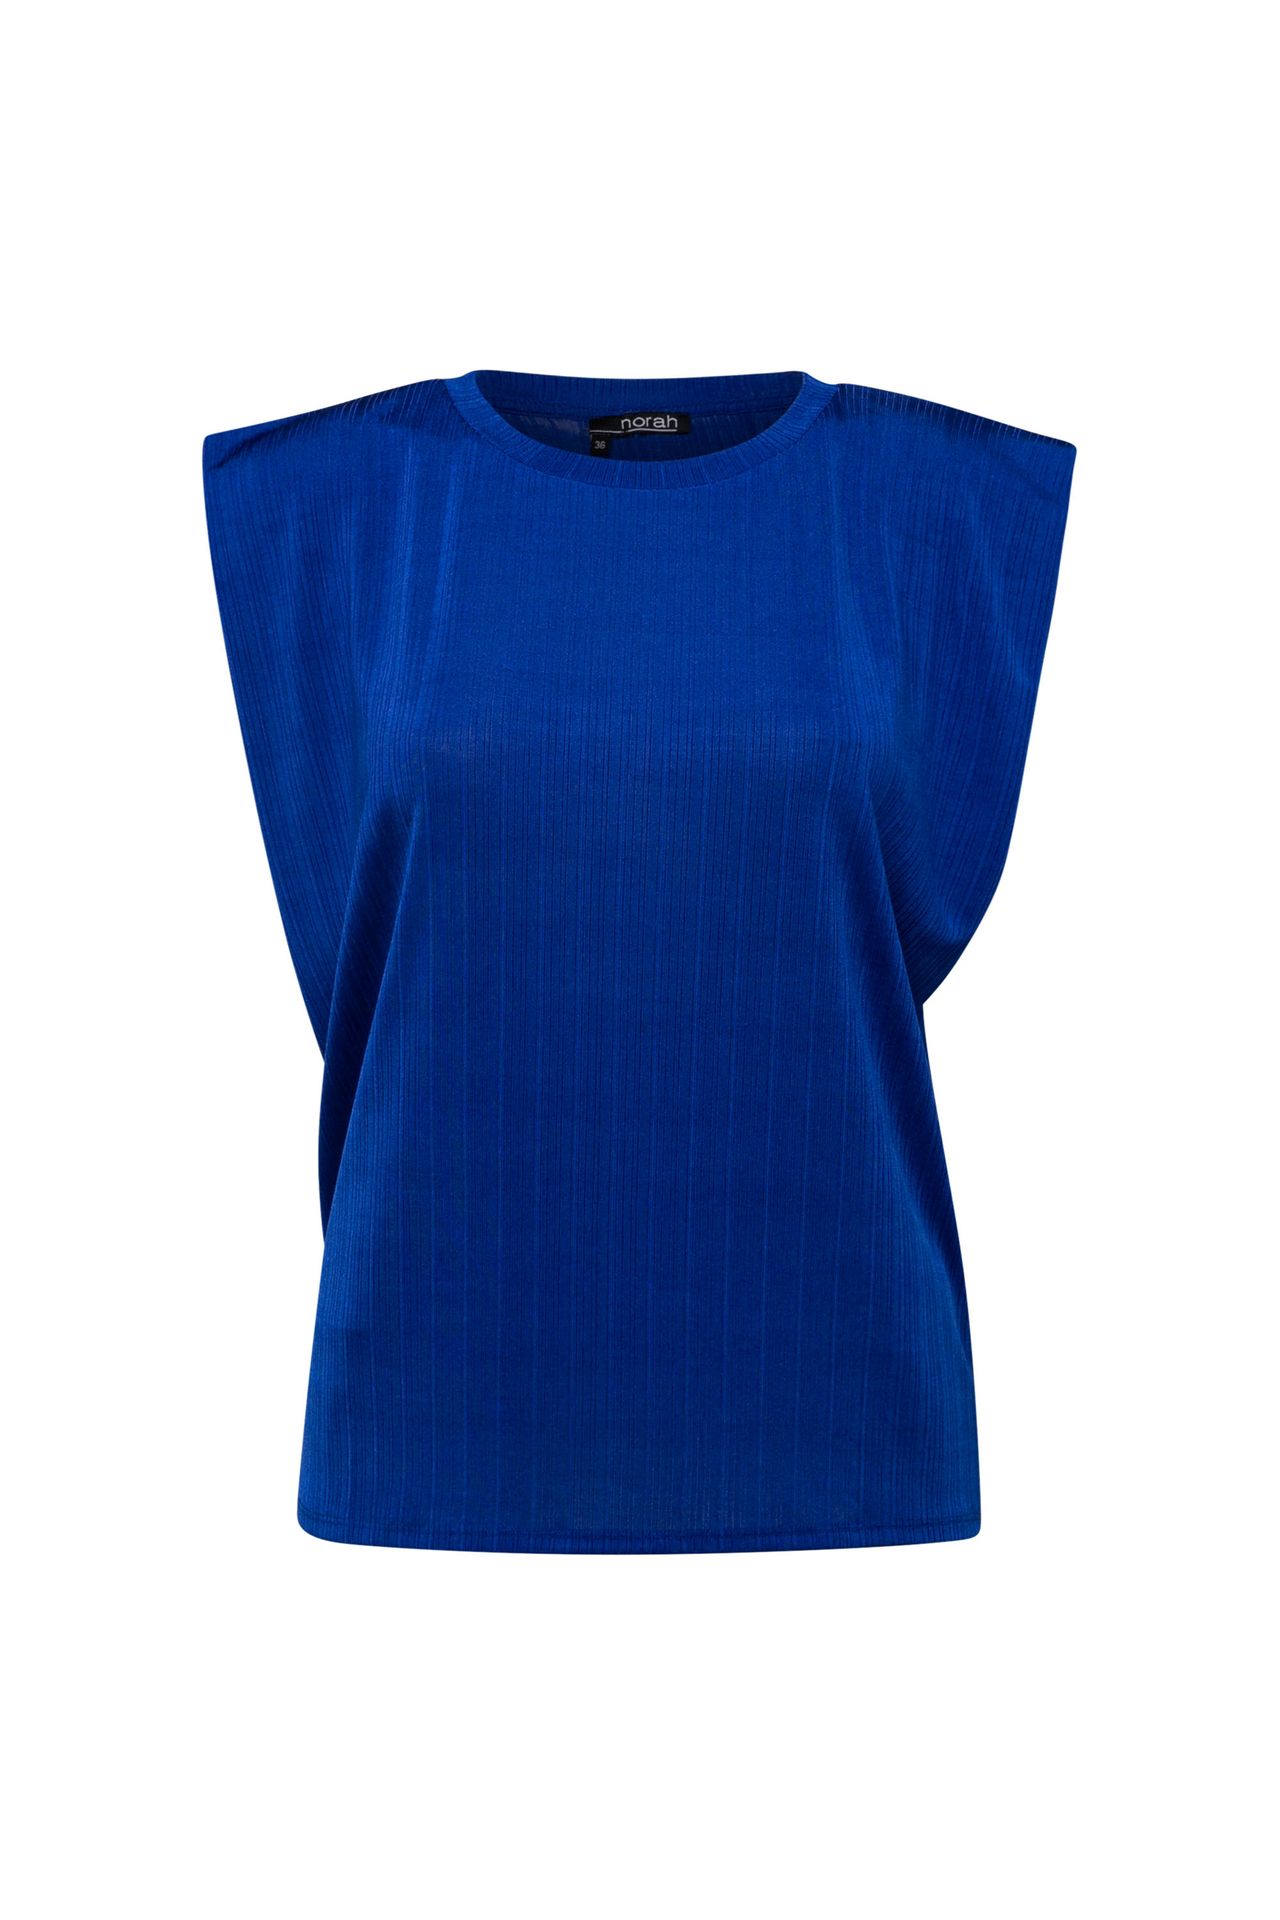 Norah Kobaltblauw shirt cobalt 213826-468